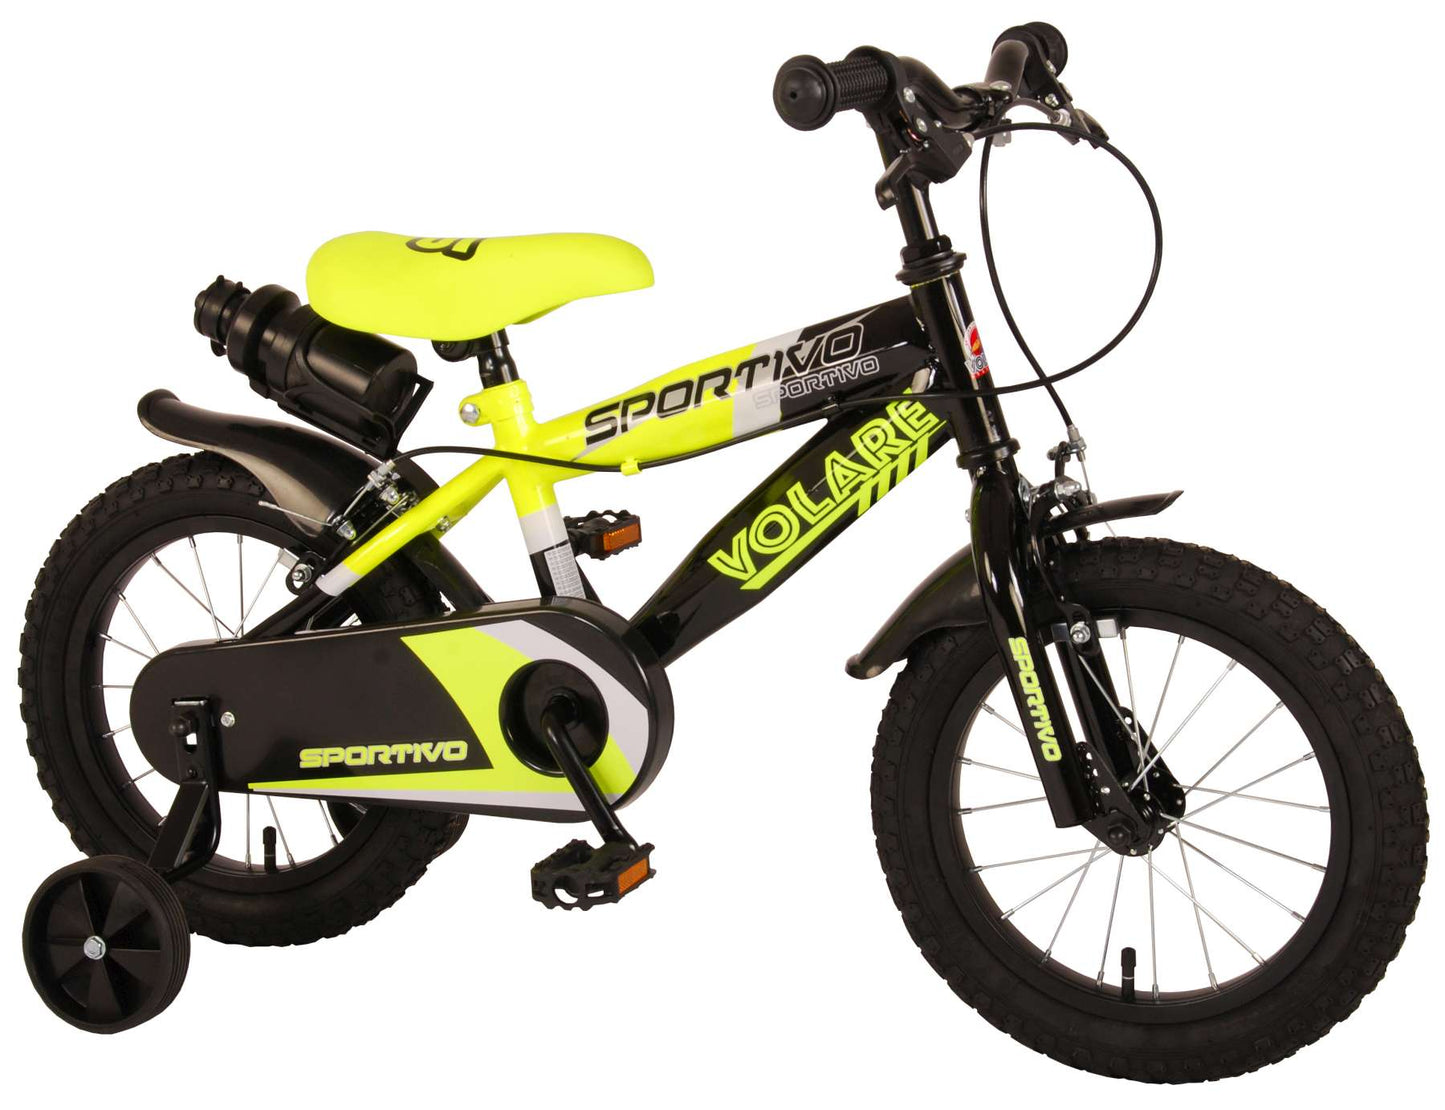 Bicycle per bambini Sports Stirare - Boys - 14 pollici - Neon Giallo Nero - Freni a due mani - 95% assemblato